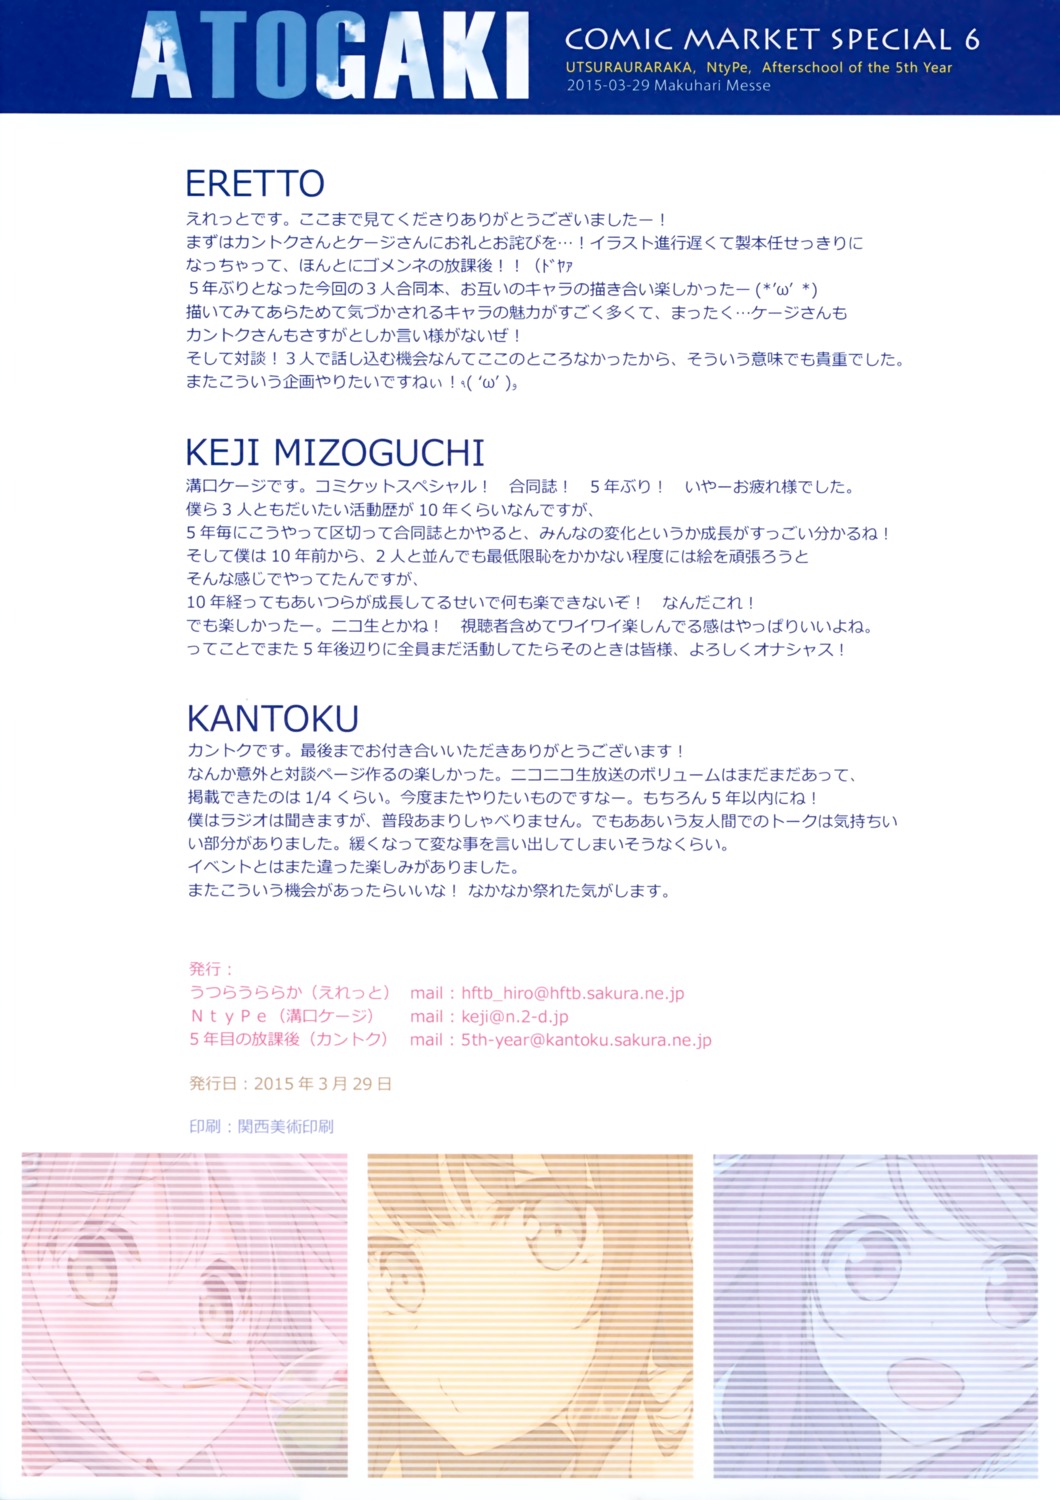 eretto kantoku mizoguchi_keiji text